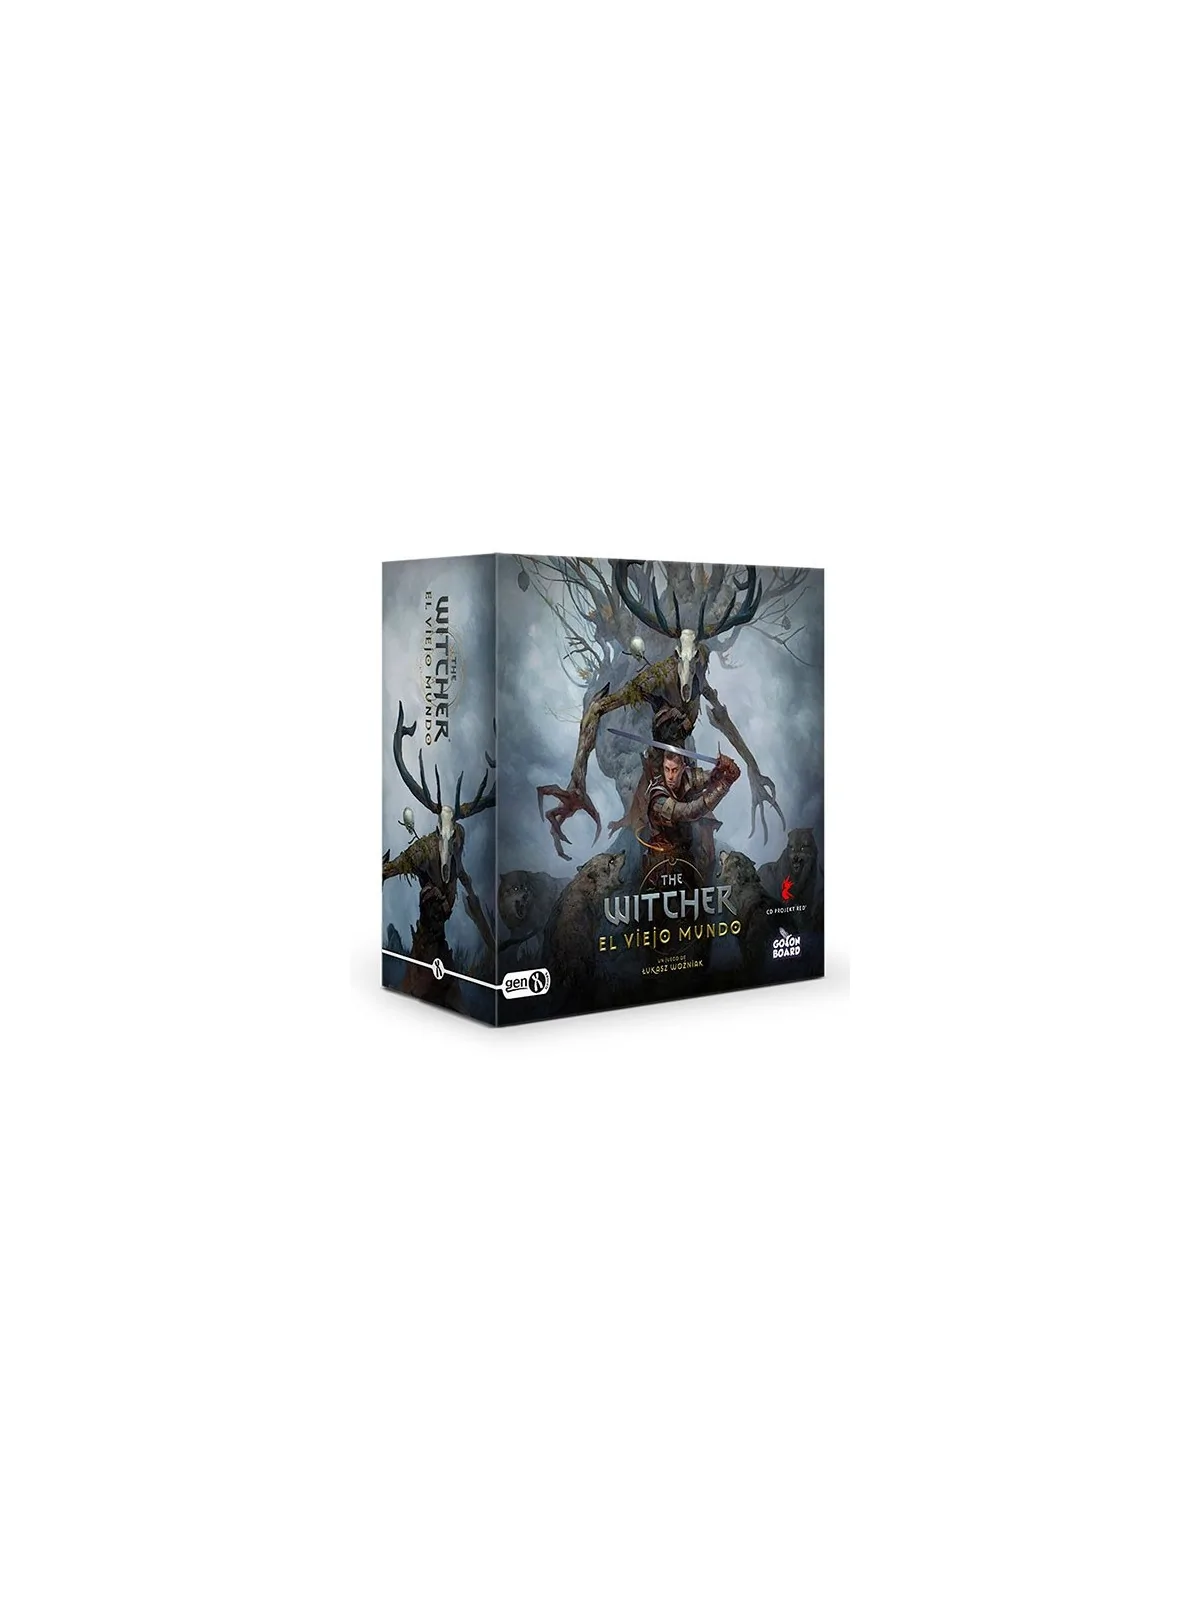 Comprar The Witcher: El Viejo Mundo Deluxe barato al mejor precio 199,